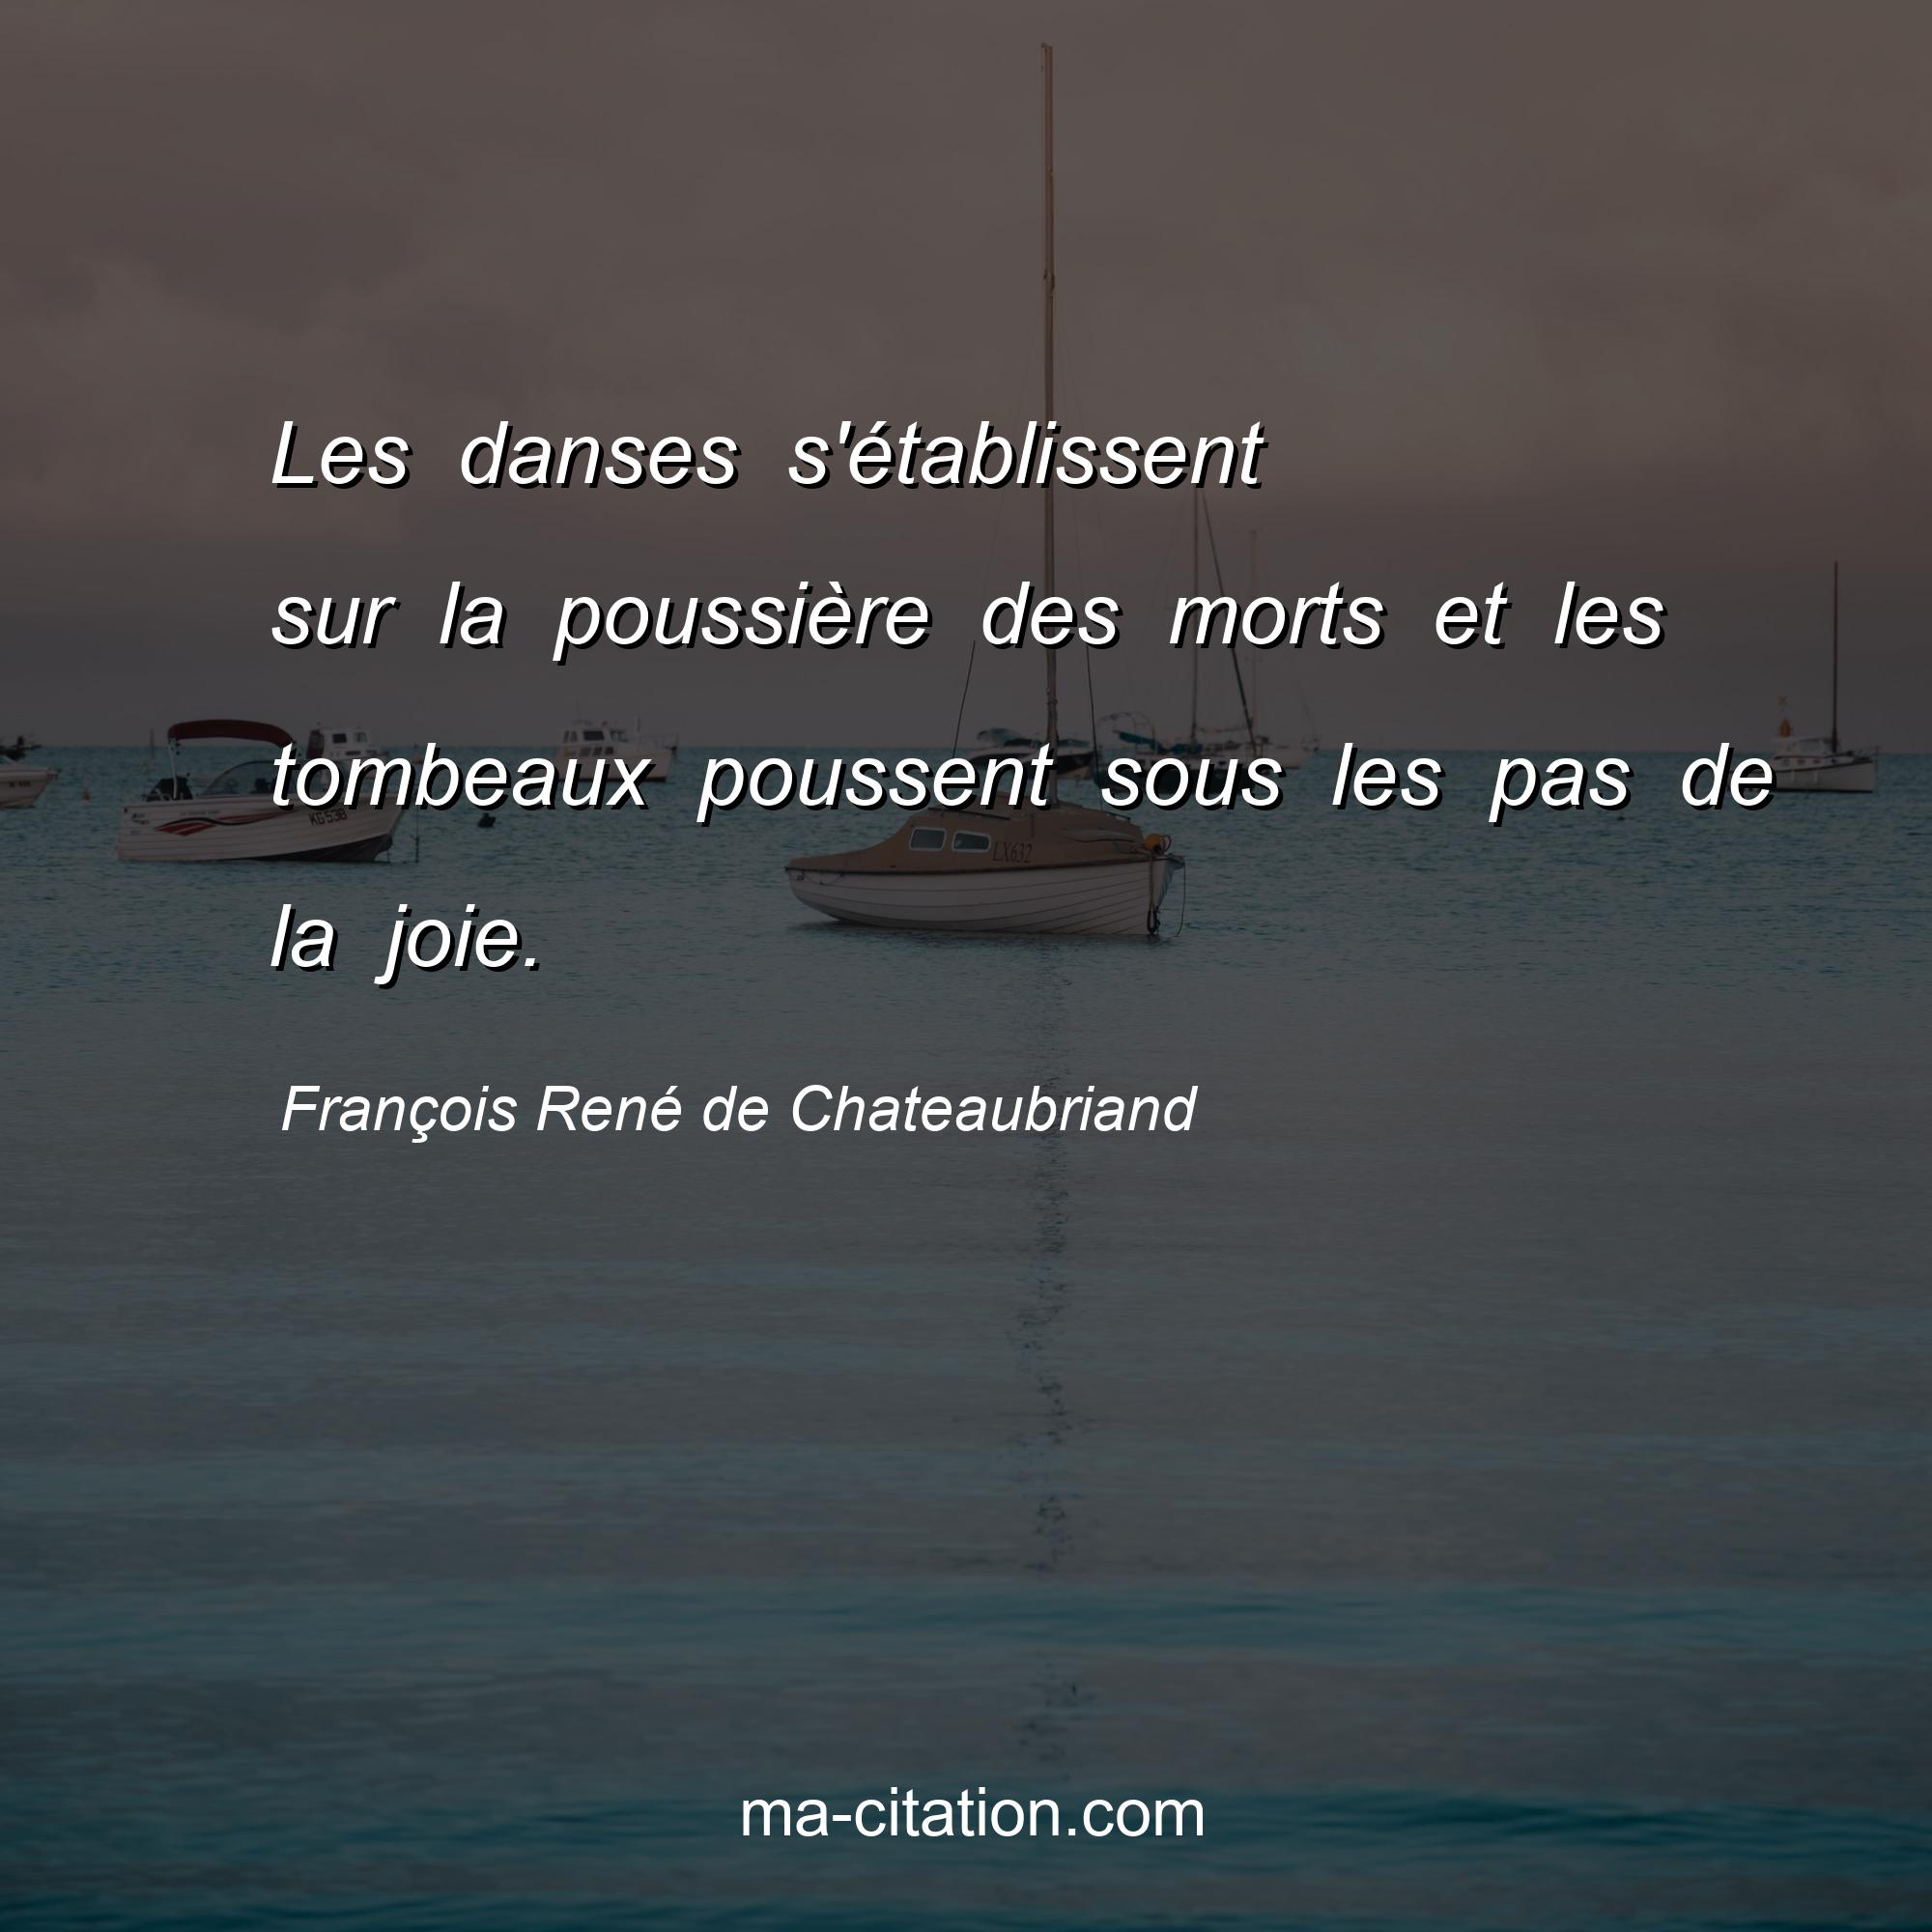 François René de Chateaubriand : Les danses s'établissent sur la poussière des morts et les tombeaux poussent sous les pas de la joie.